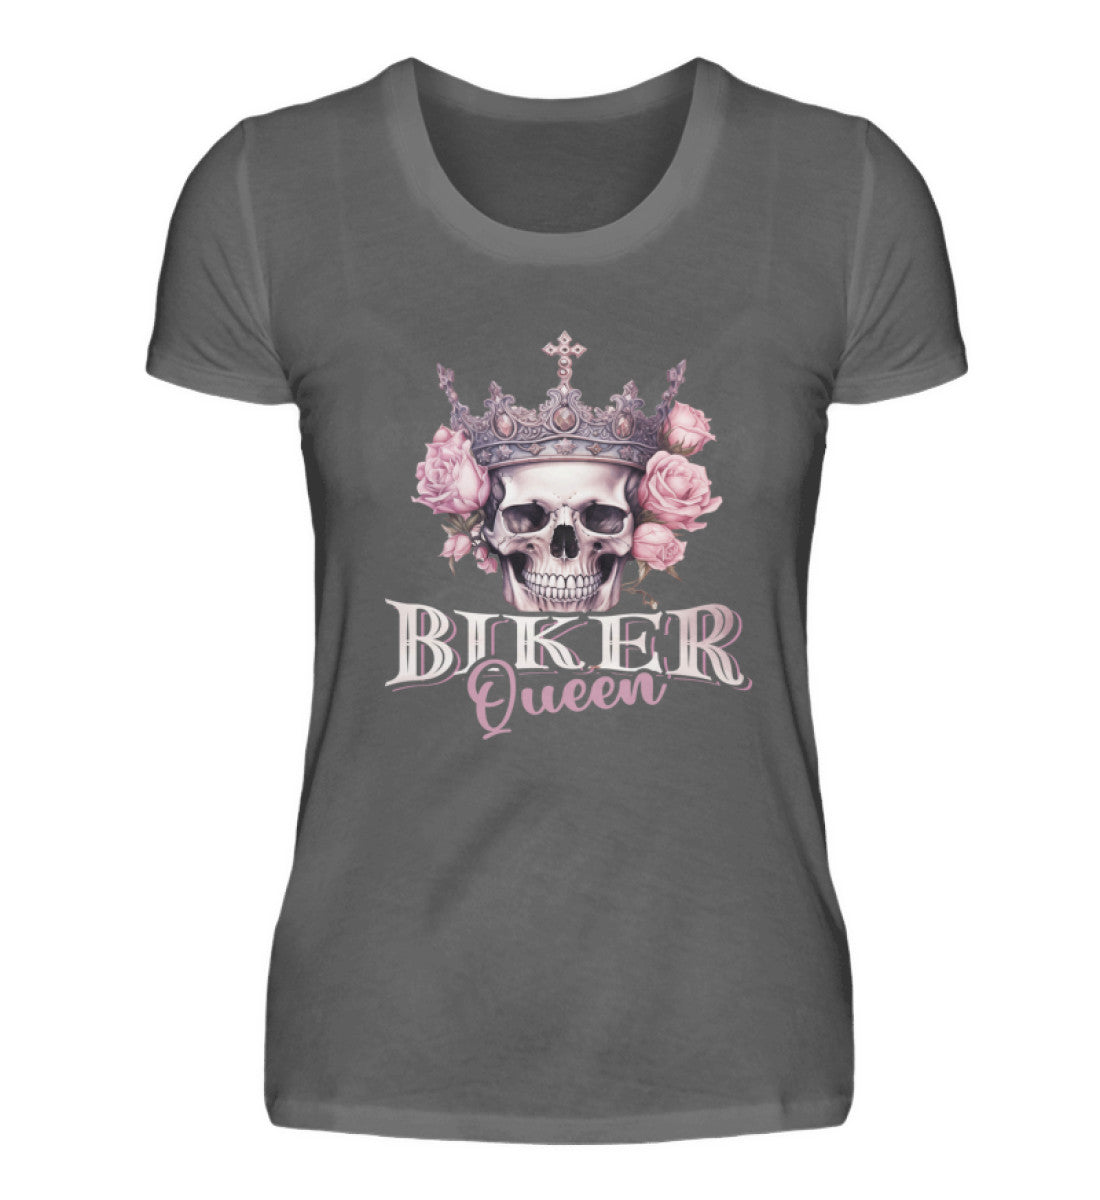 Ein Bikerin T-Shirt für Motorradfahrerinnen von Wingbikers mit dem Aufdruck, Biker Queen - in dunkelgrau.